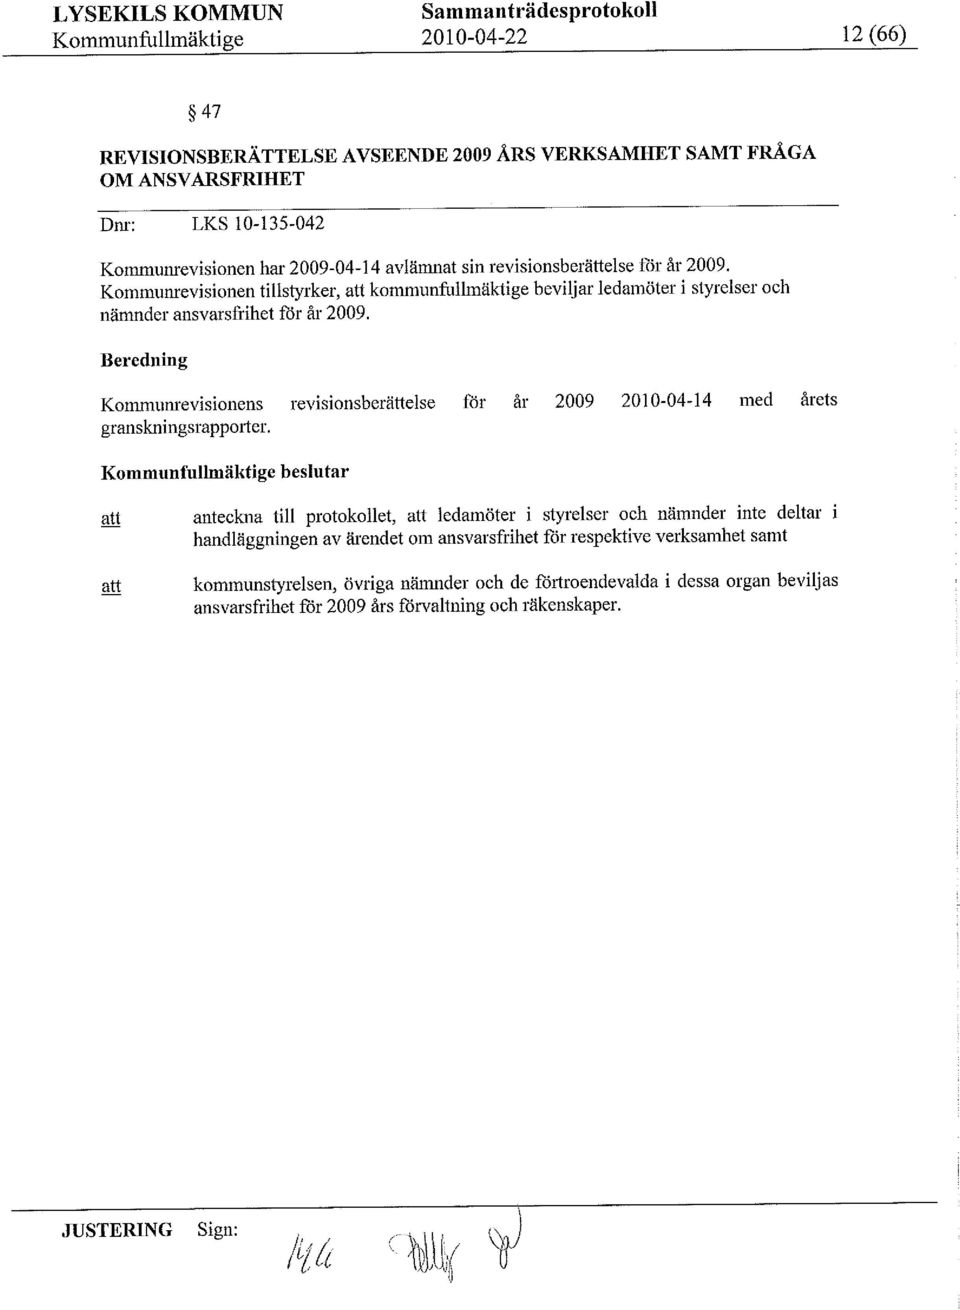 Beredning Kounrevisionens revisionsberättelse för år 29 21-4-14 ed årets granskningsrapporter.